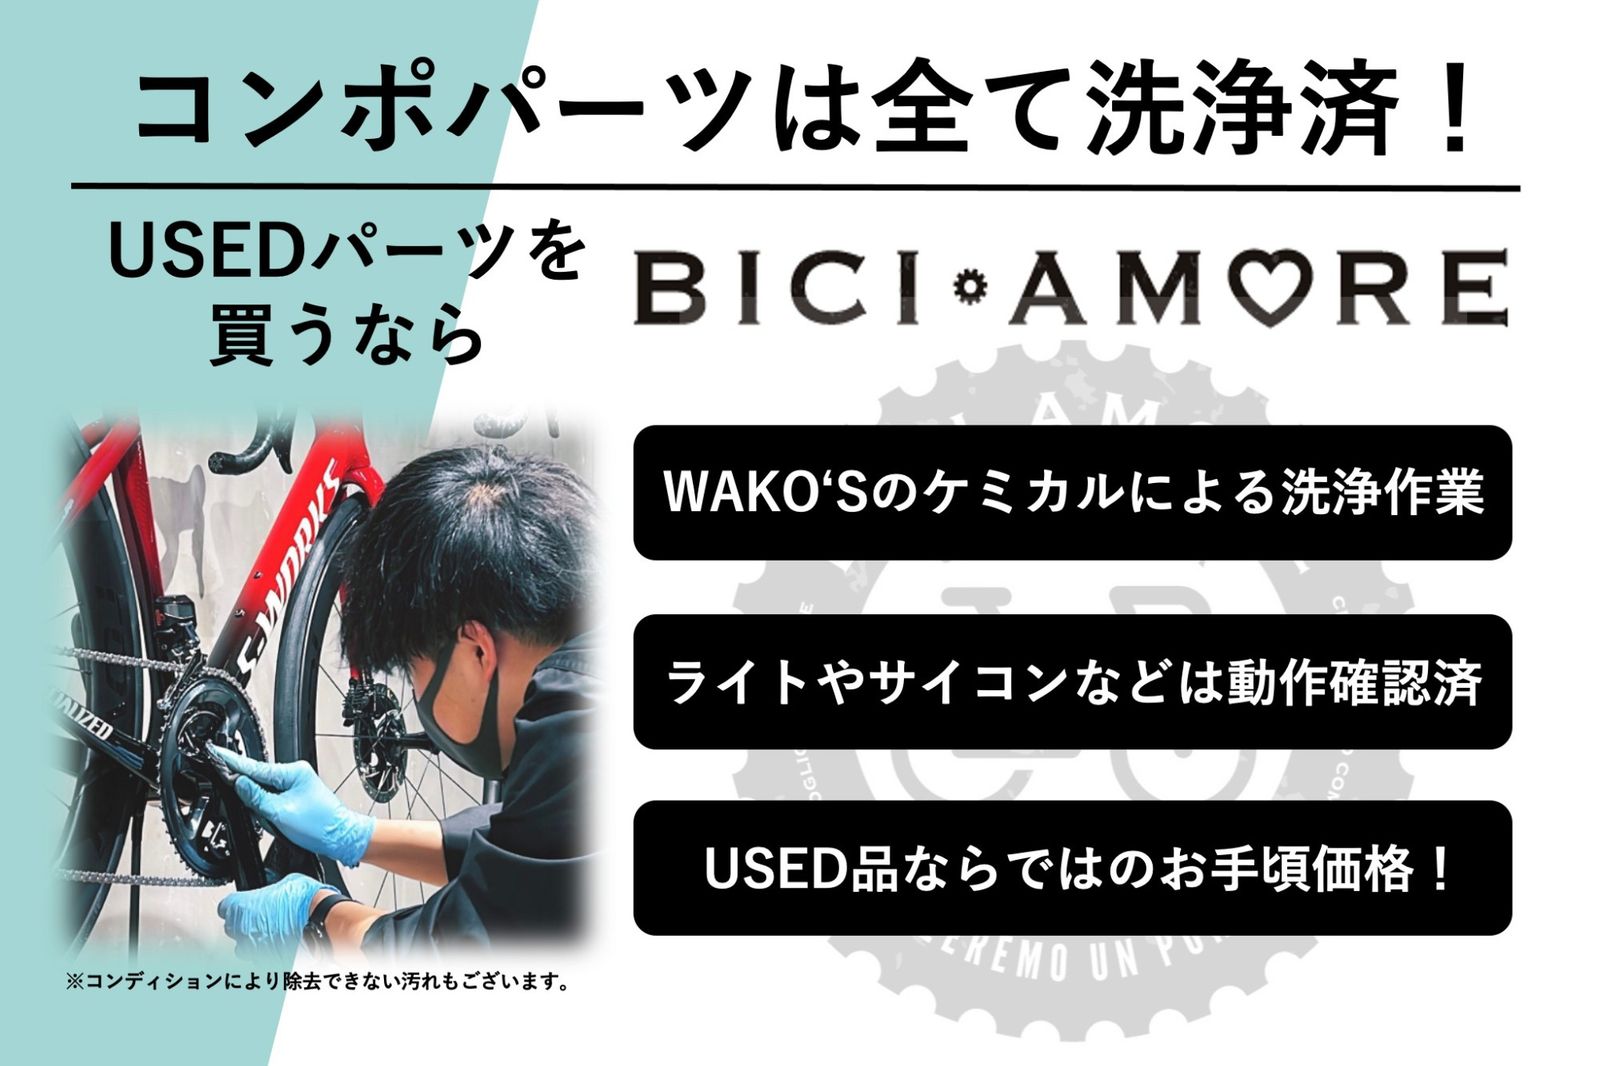 HN933 シマノ SHIMANO 105 FC-R7000 クランクアーム 11S 170mm - メルカリ